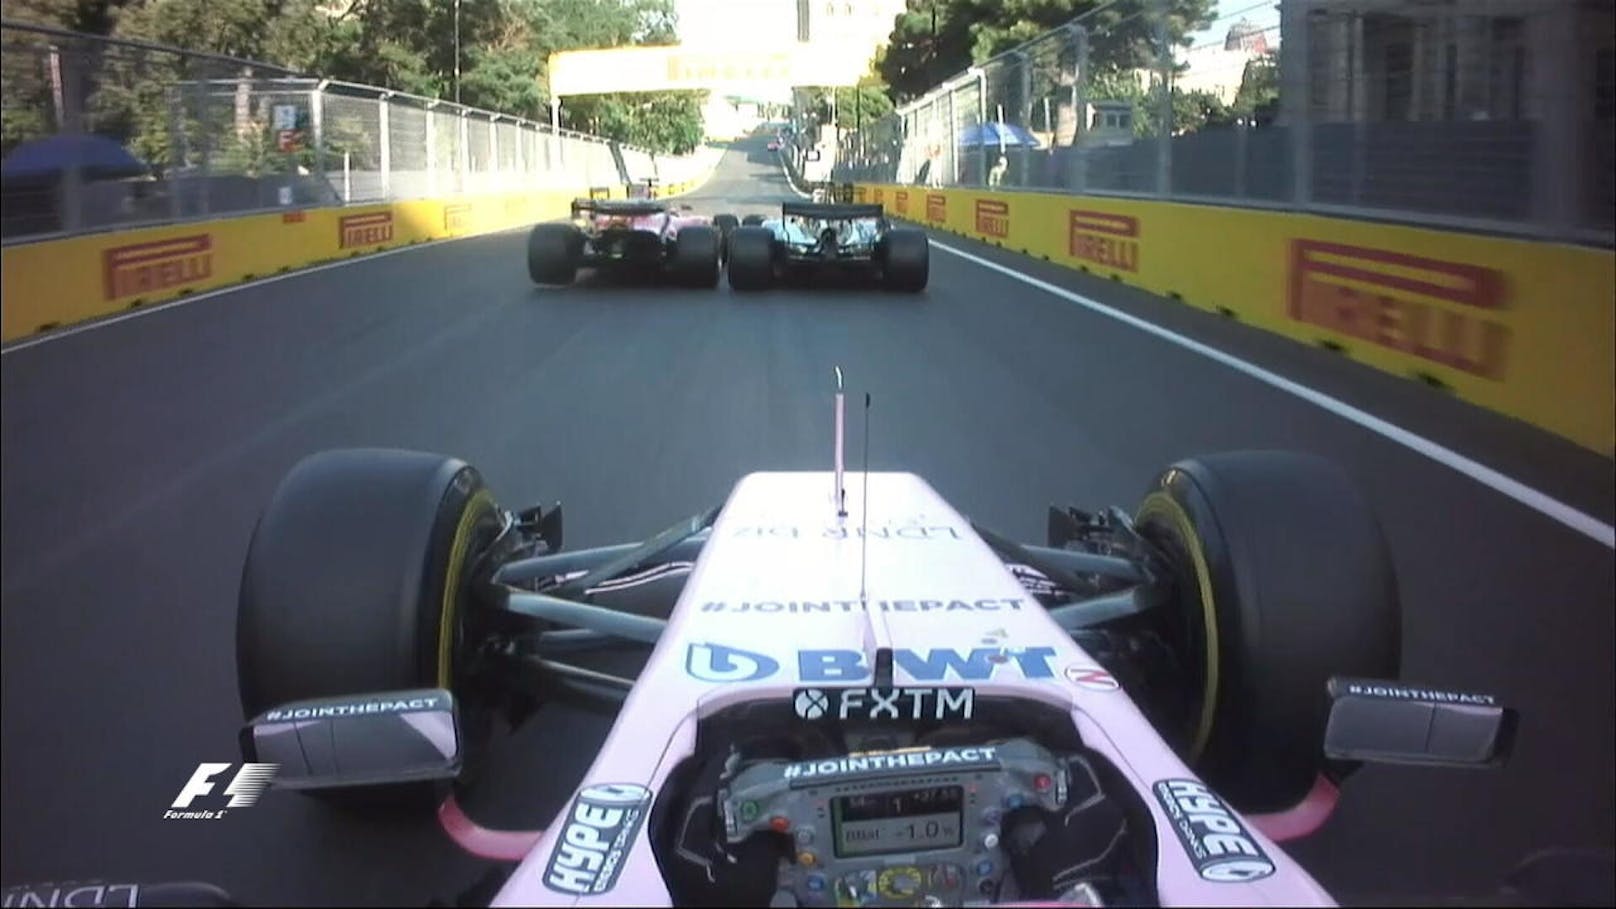 Vettel ist stinksauer, er glaubt, dass Hamilton mit ihm einen "Bremstest" gemacht hat und kracht als "Revanche" absichtlich in die Seite des Briten. Die Rennleitung verhängt 10 Sekunden Zeitstrafe. Auch Hamilton muss an die Box, weil sich seine Kopfstütze löste - Sieg verschenkt!